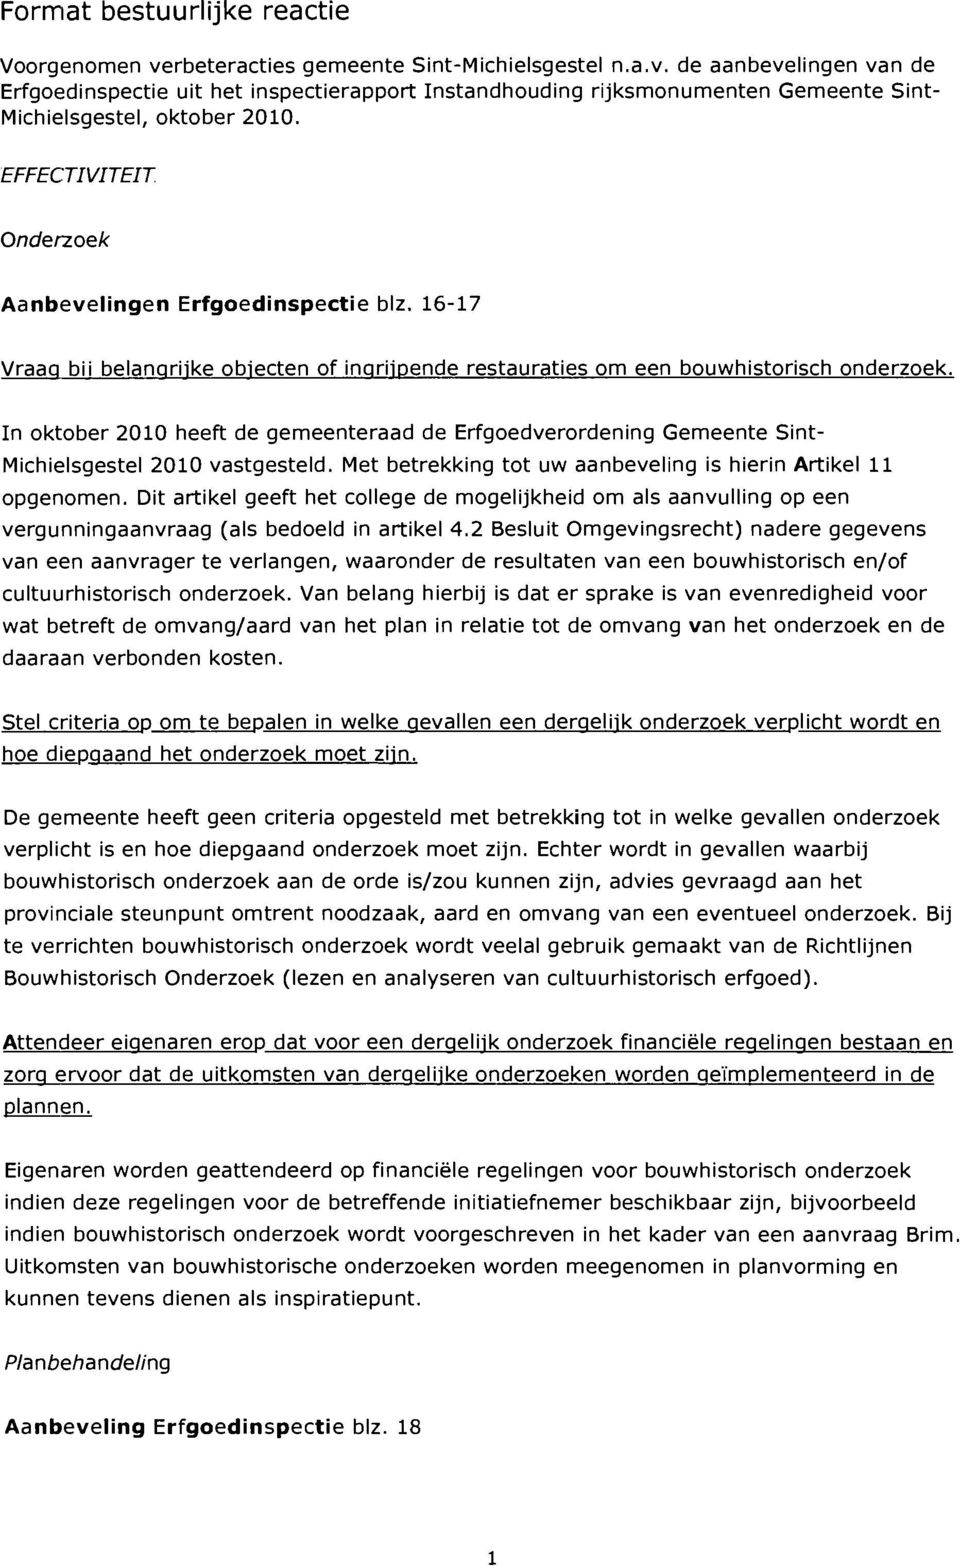 In oktober 2010 heeft de gemeenteraad de Erfgoedverordening Gemeente Sint- Michielsgestel 2010 vastgesteld. Met betrekking tot uw aanbeveling is hierin Artikel 11 opgenomen.